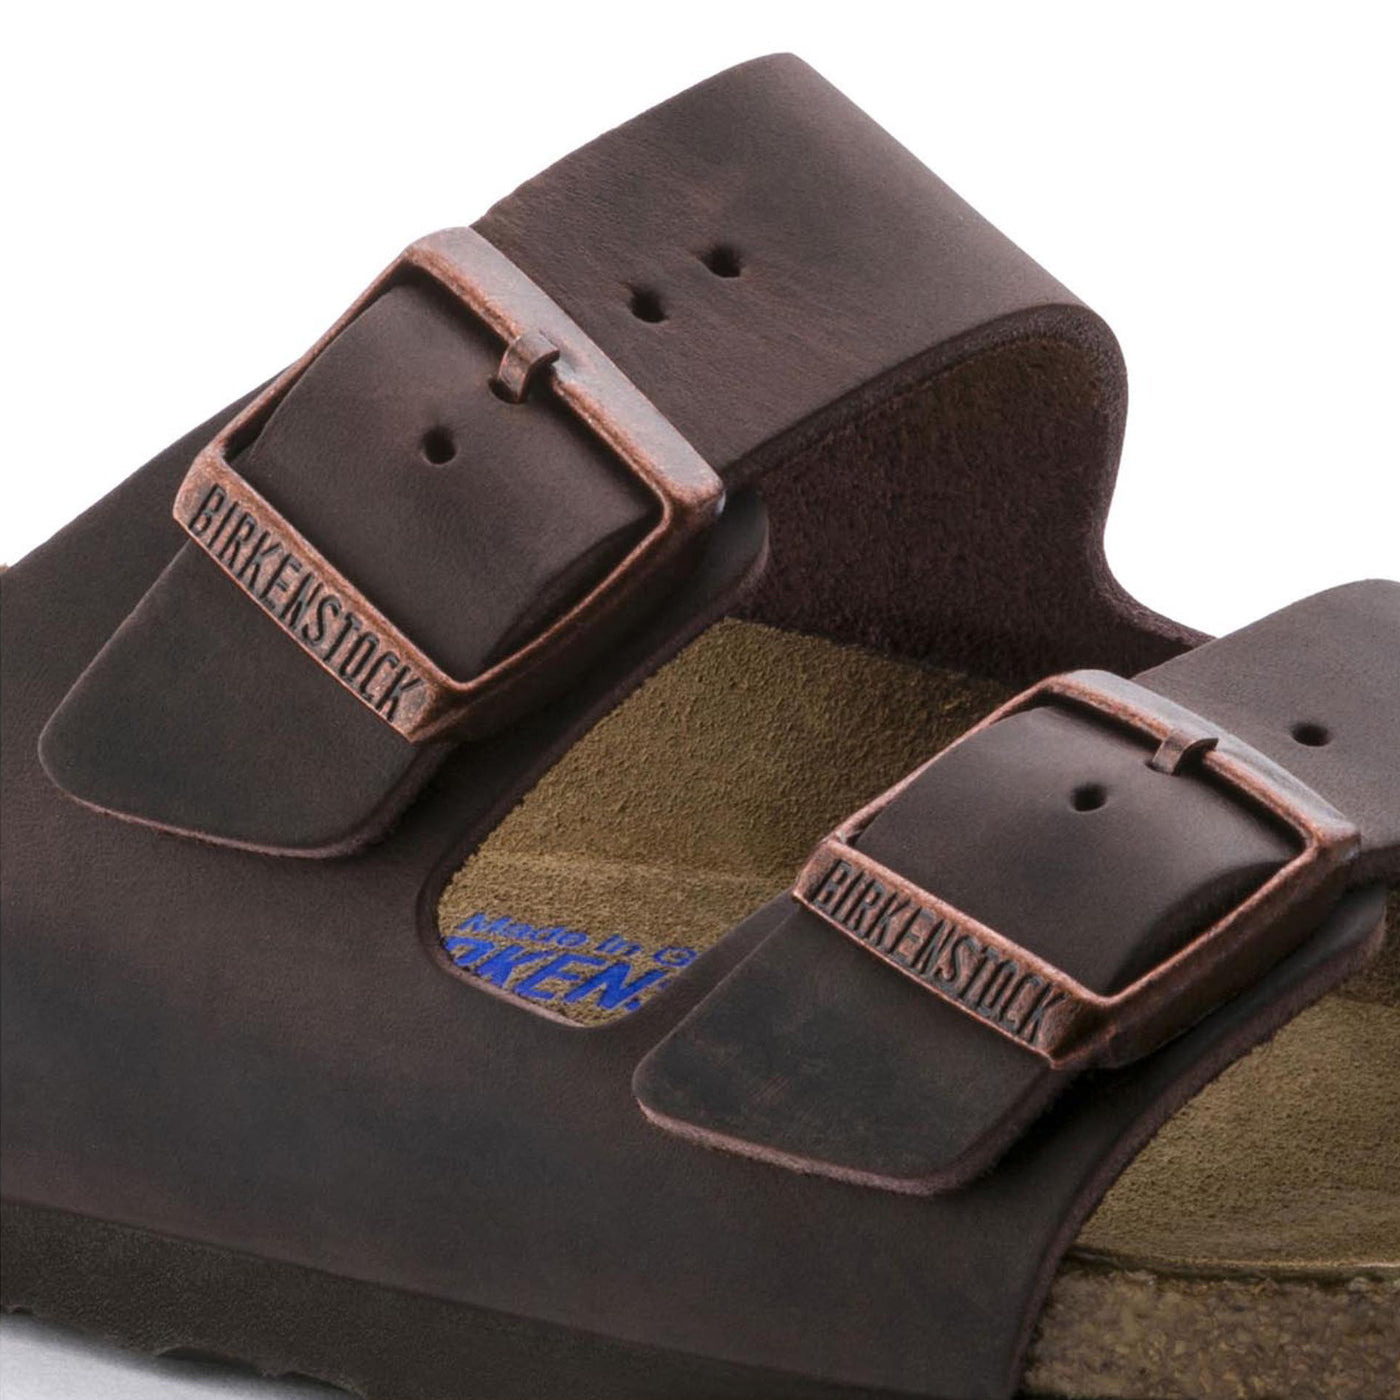 Arizona Soft Footbed - Oiled Leather